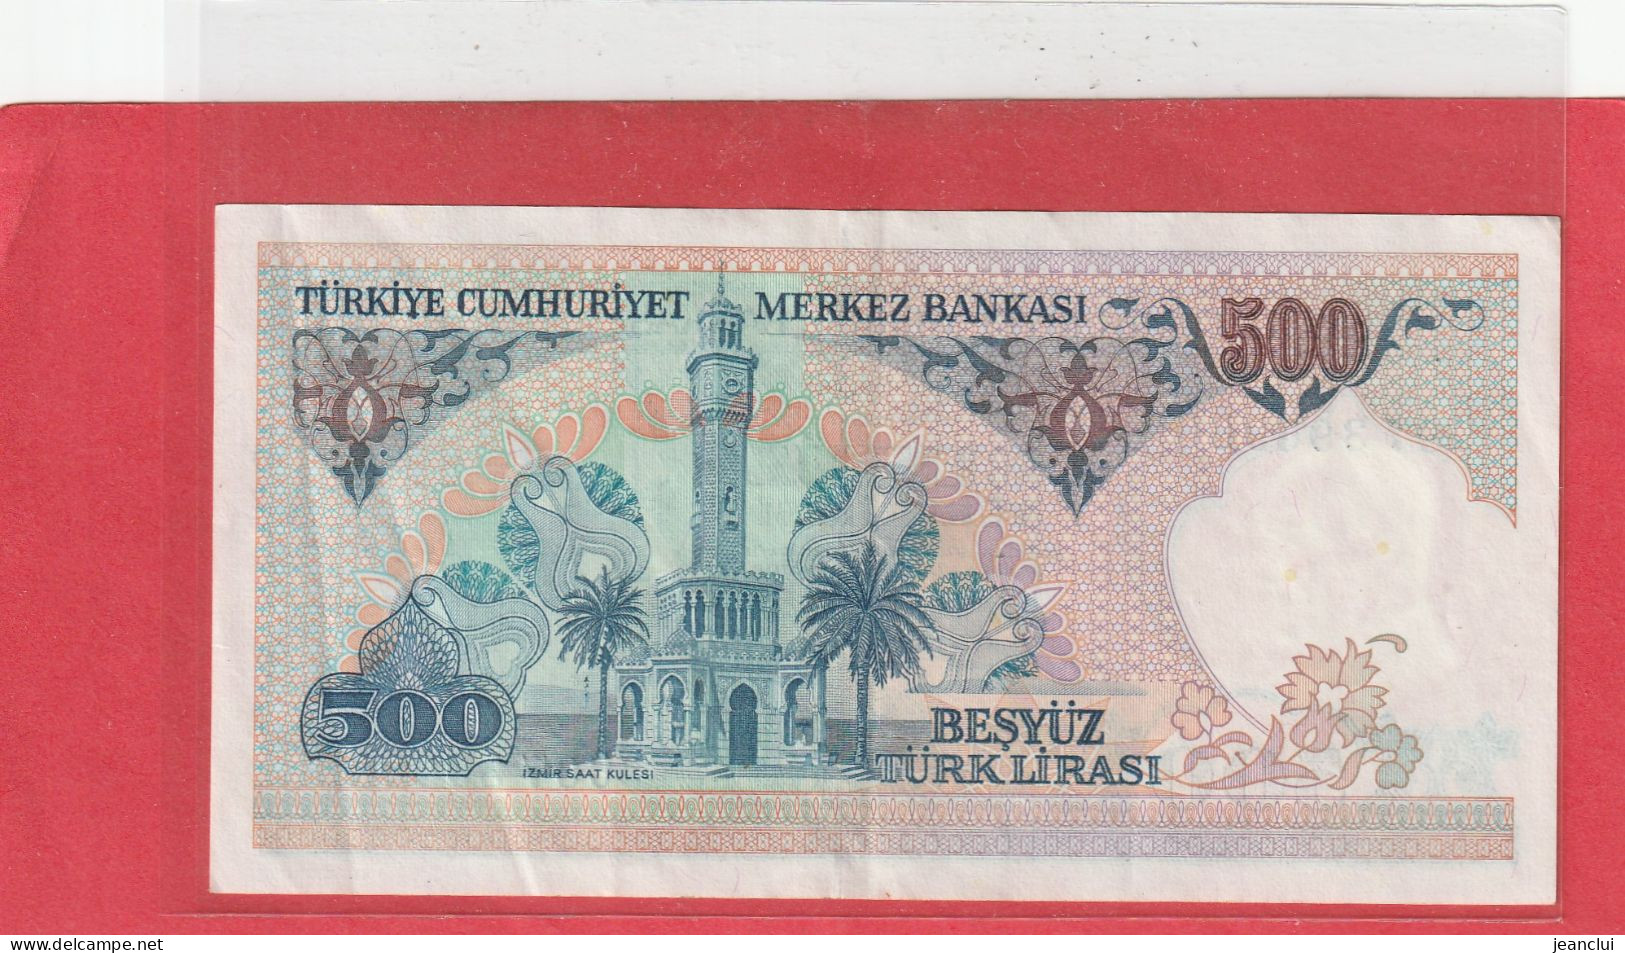 TURKIYE CUMHURIYET MERKEZ BANKASI . 500 LIRA . 14 OCAK 1970  . N°  C 07396966 .  2 SCANNES  .  BEL ETAT - Turkey